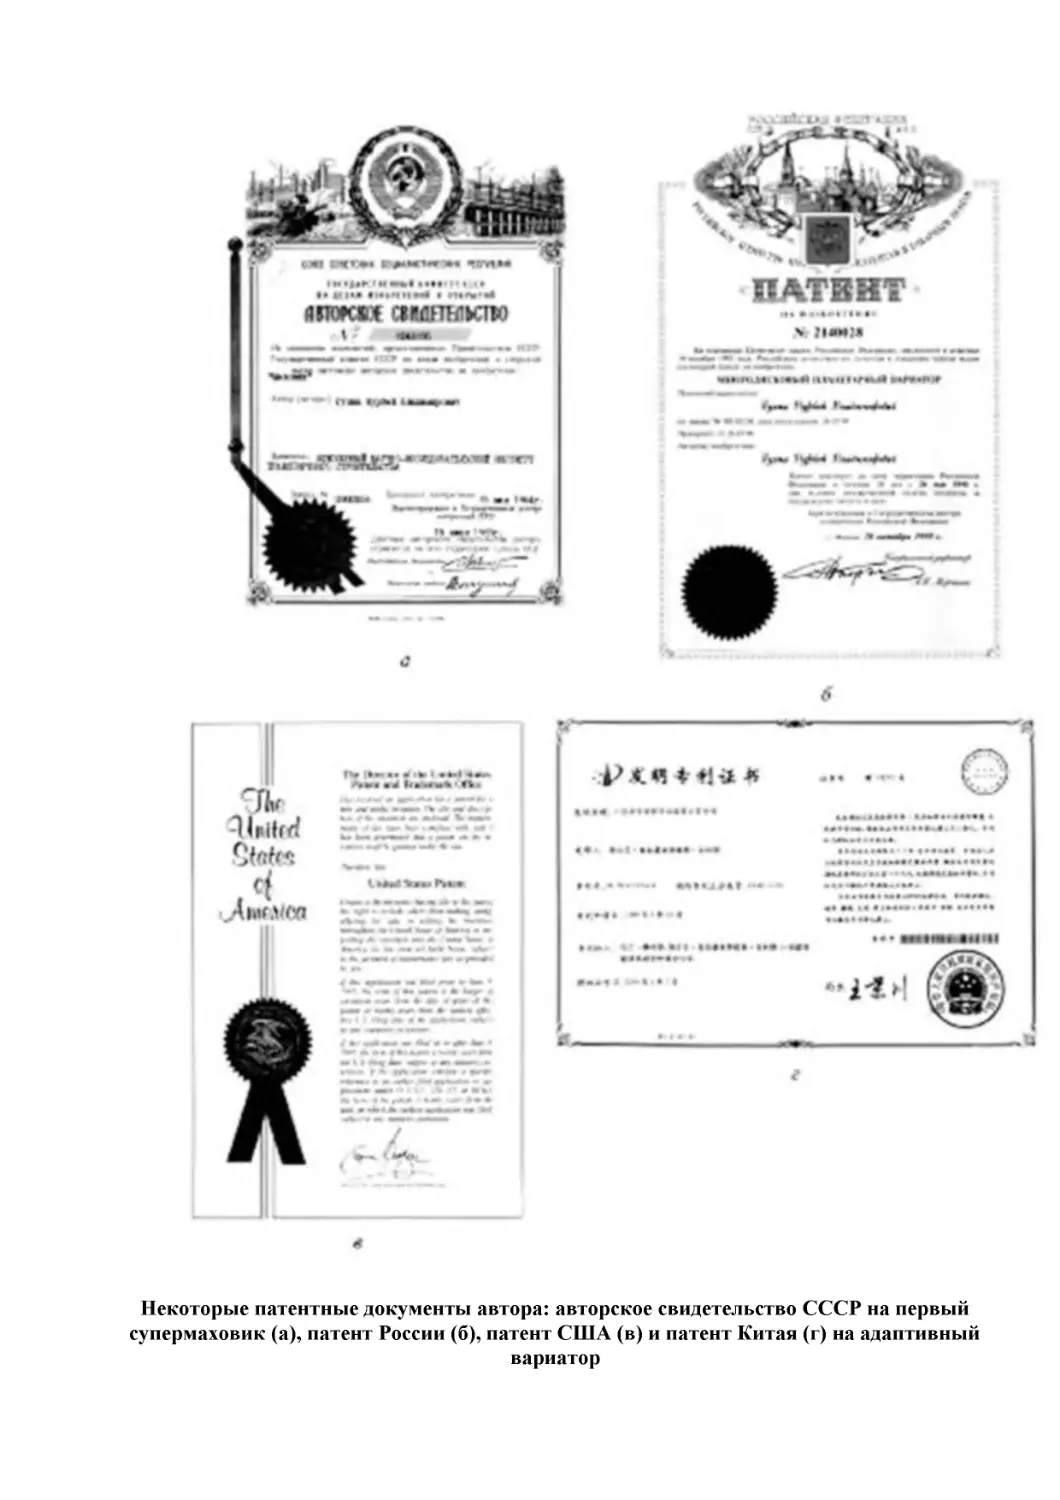 Некоторые патентные документы автора